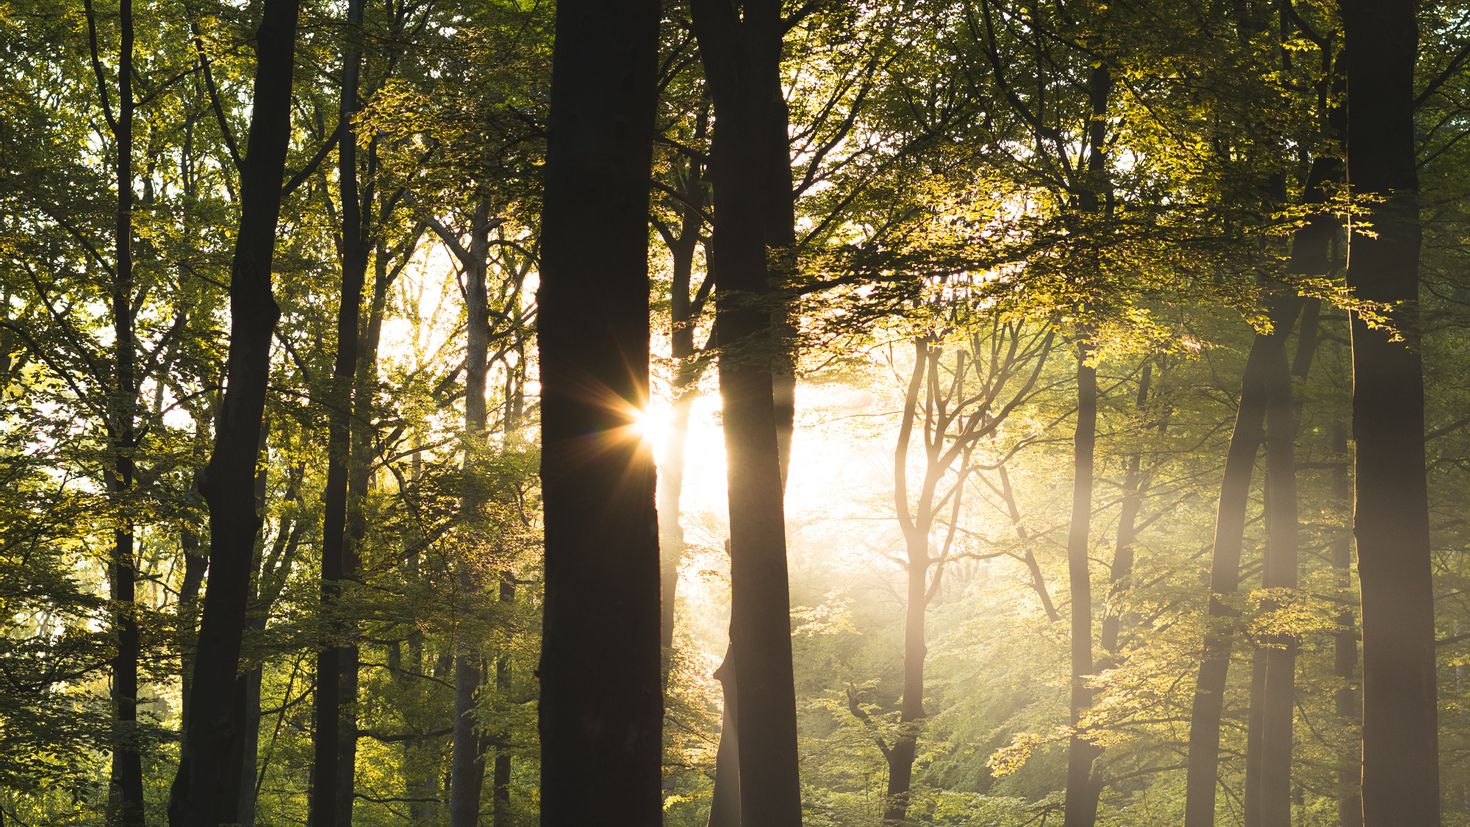 Проглядывают первые лучи солнца ярко. Дерево в лучах солнца. Солнечный лес. "Солнце в лесу". Утро в лесу.